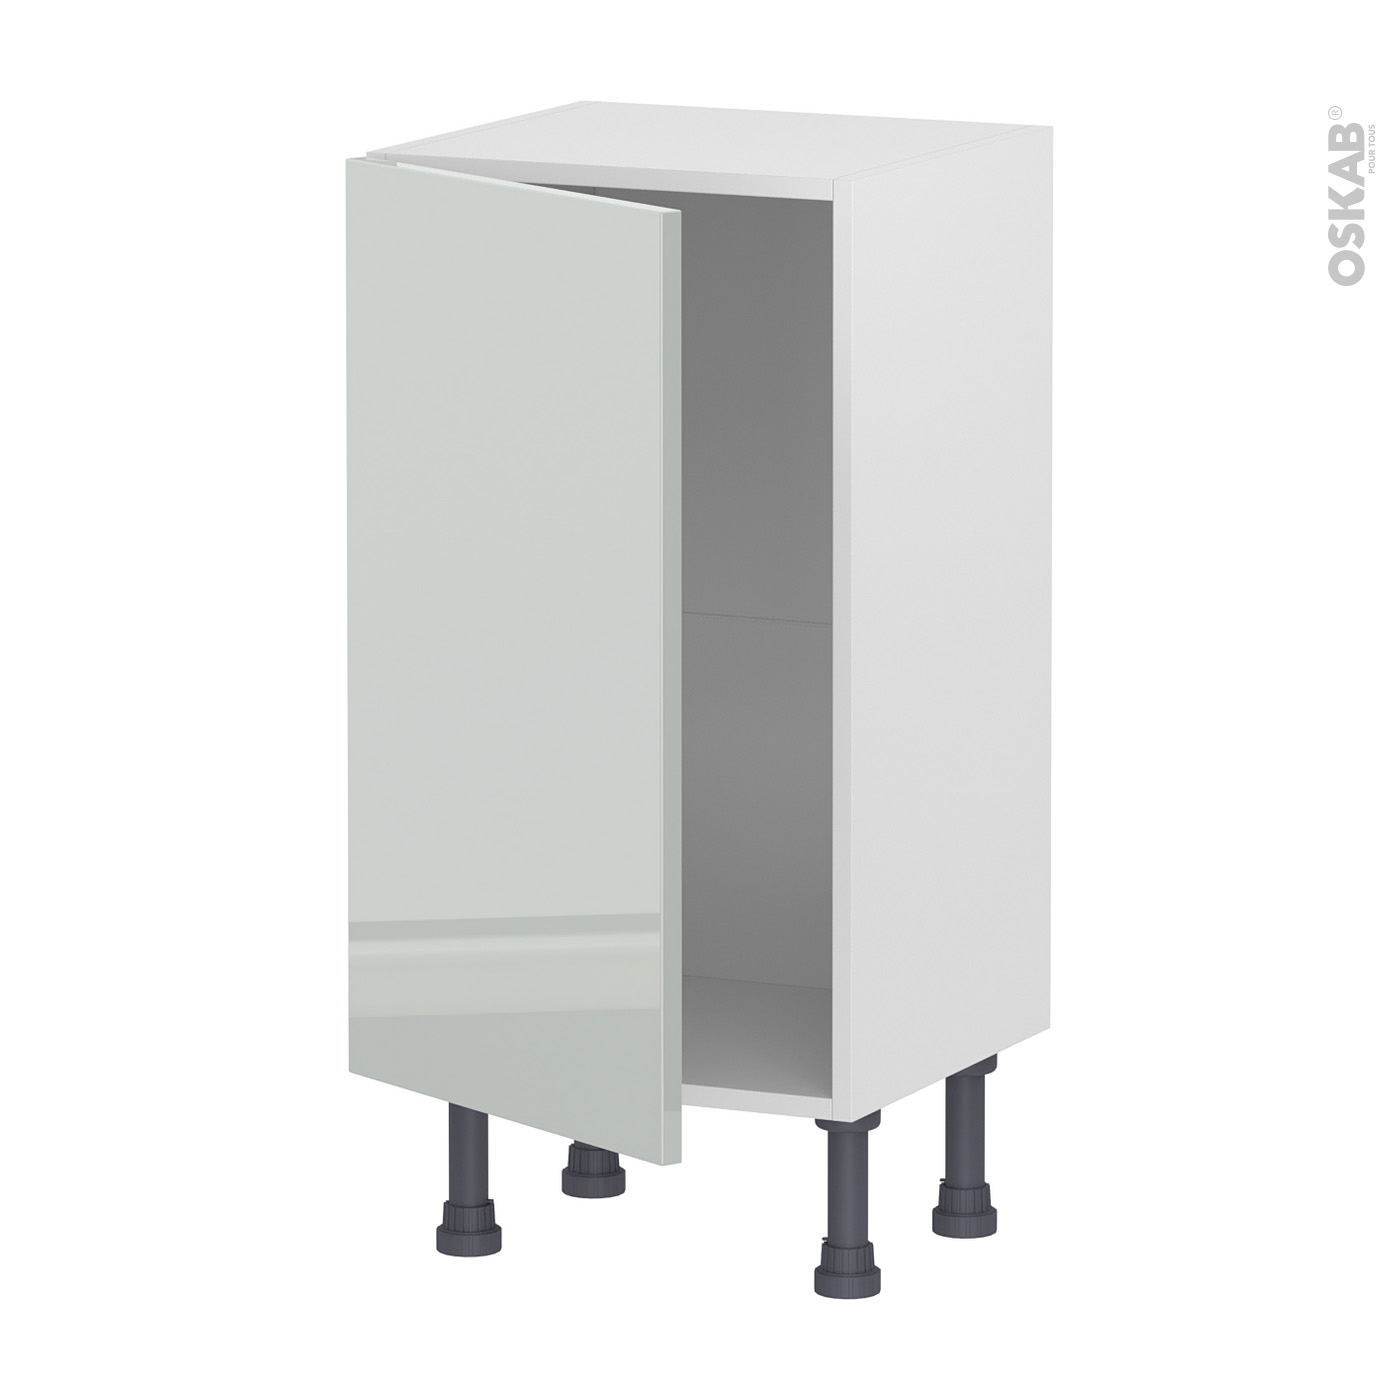 Meuble de cuisine Sous évier HELIA Gris 2 portes lessiviel-poubelle  coulissante L100 x H70 x P58 cm - Oskab